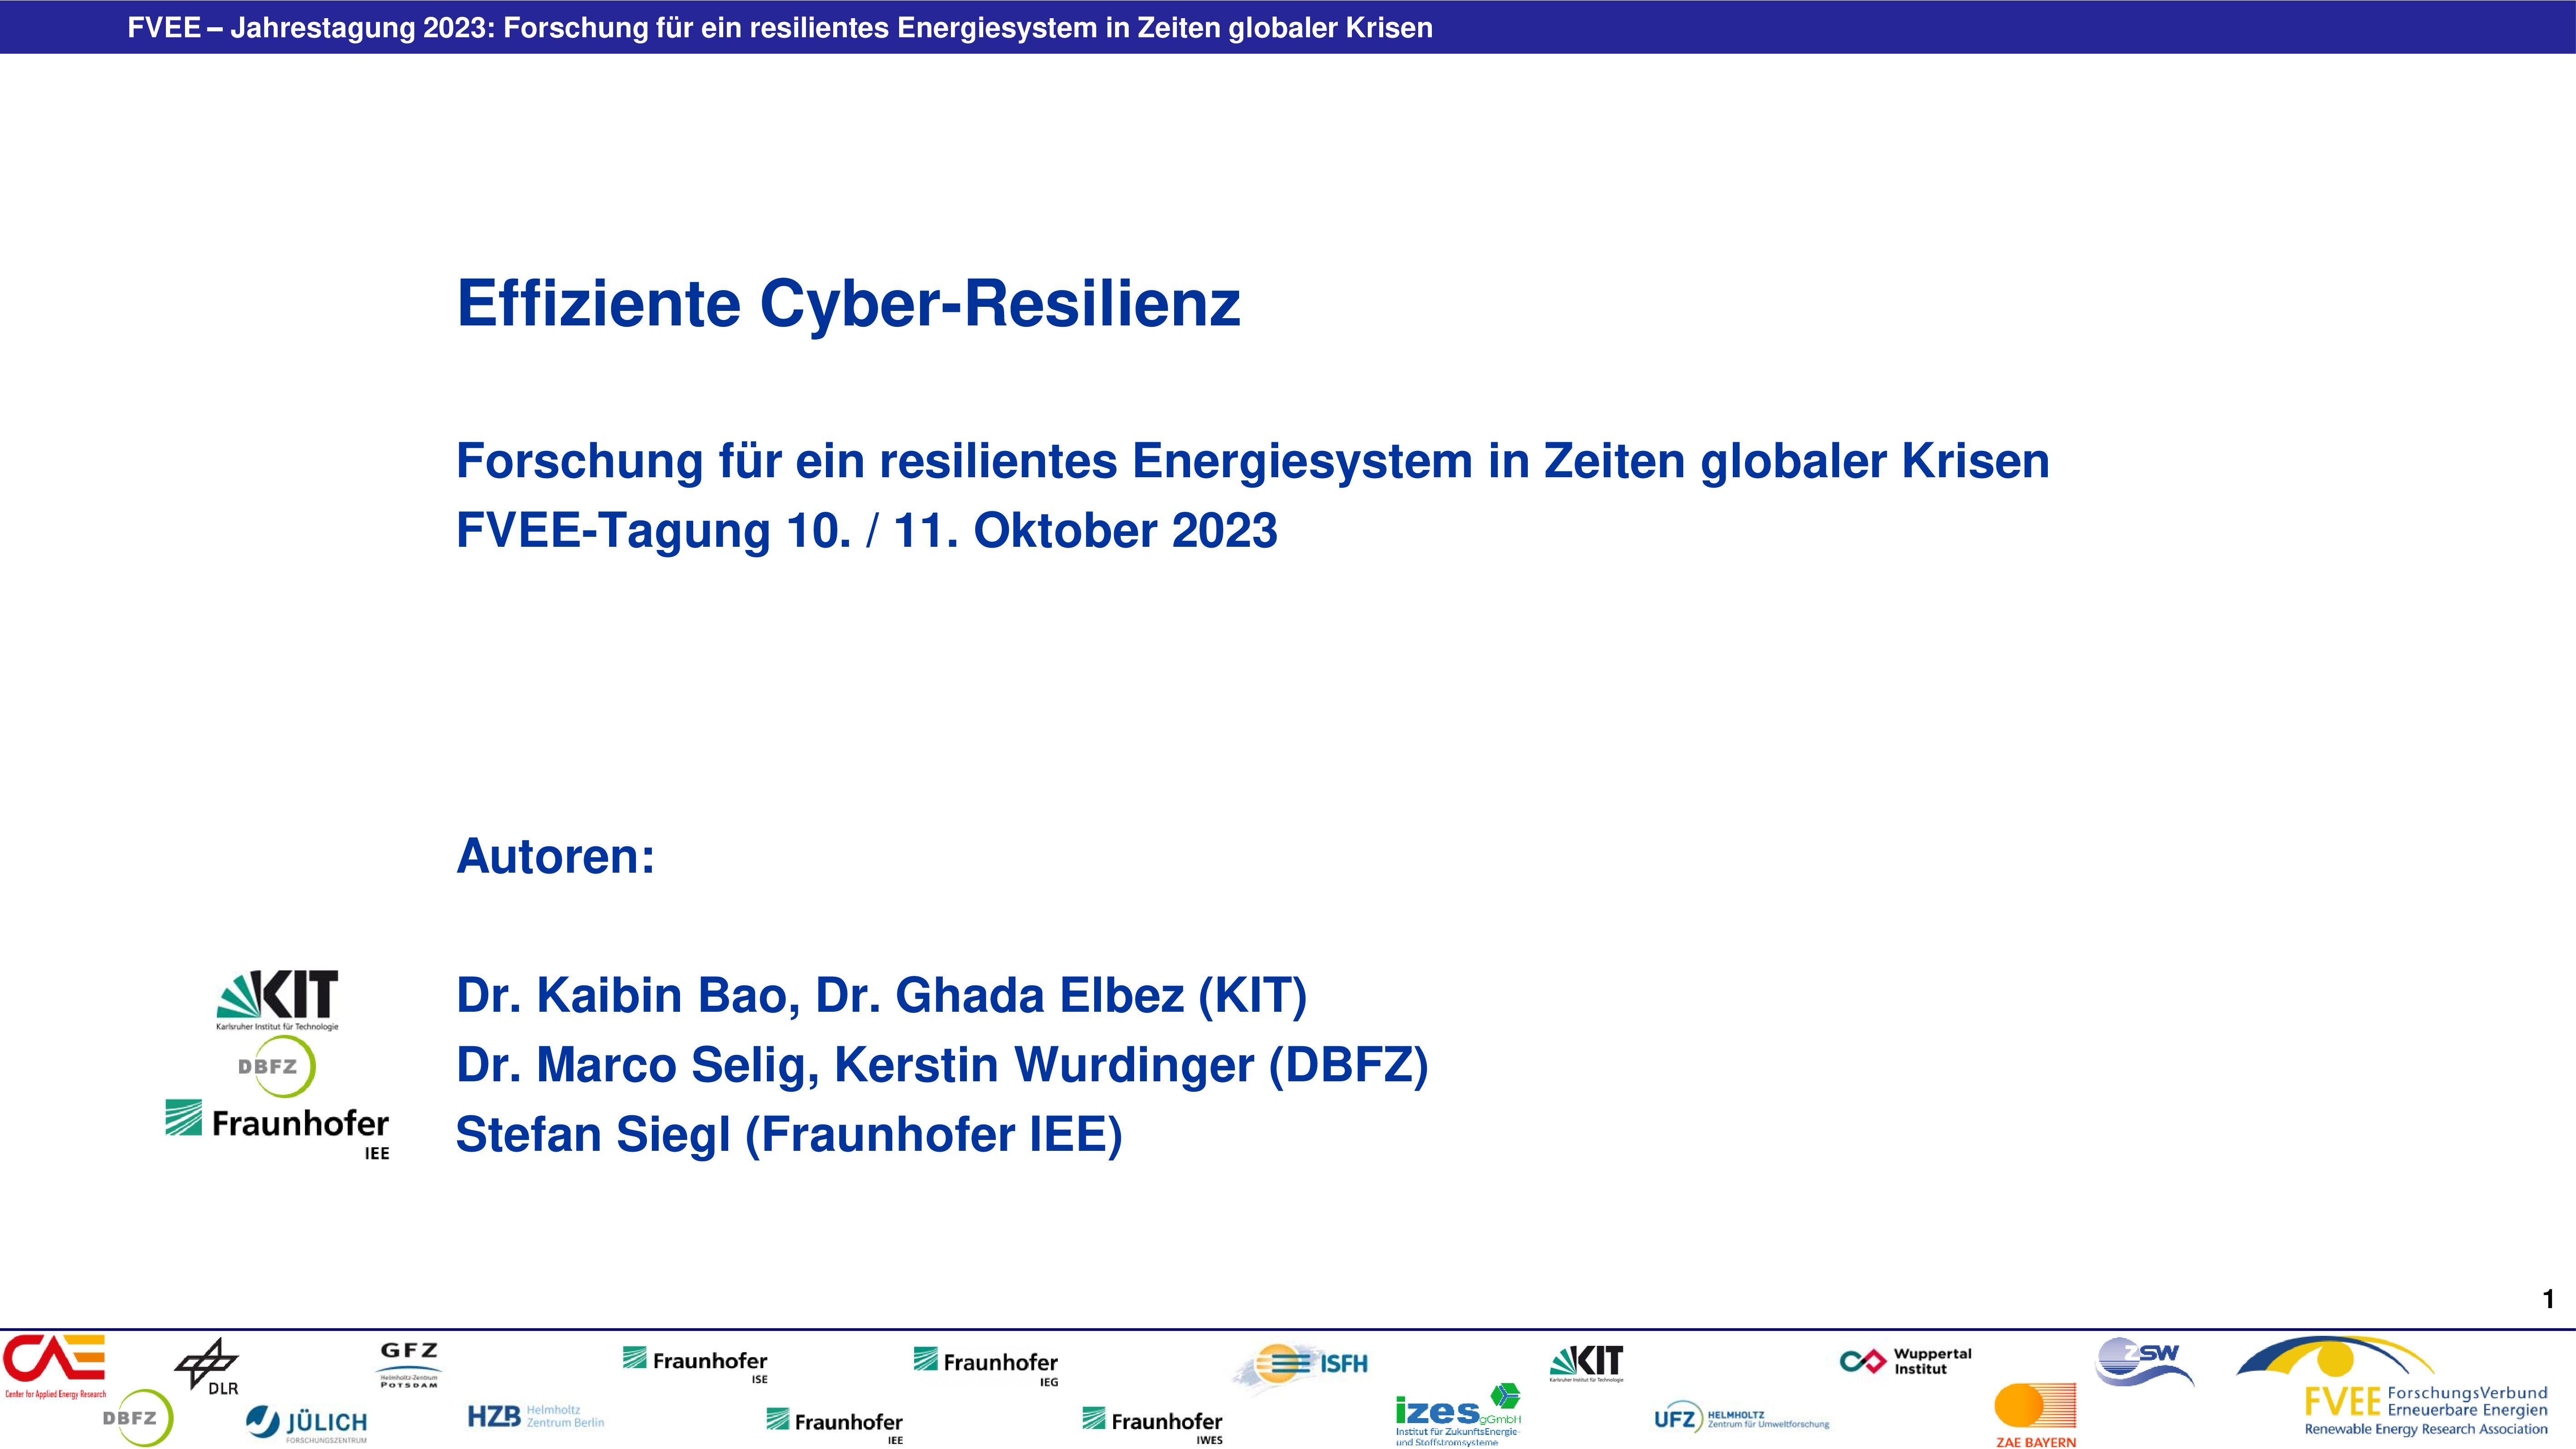 Effiziente Cyber-Resilienz (Bao - KIT)